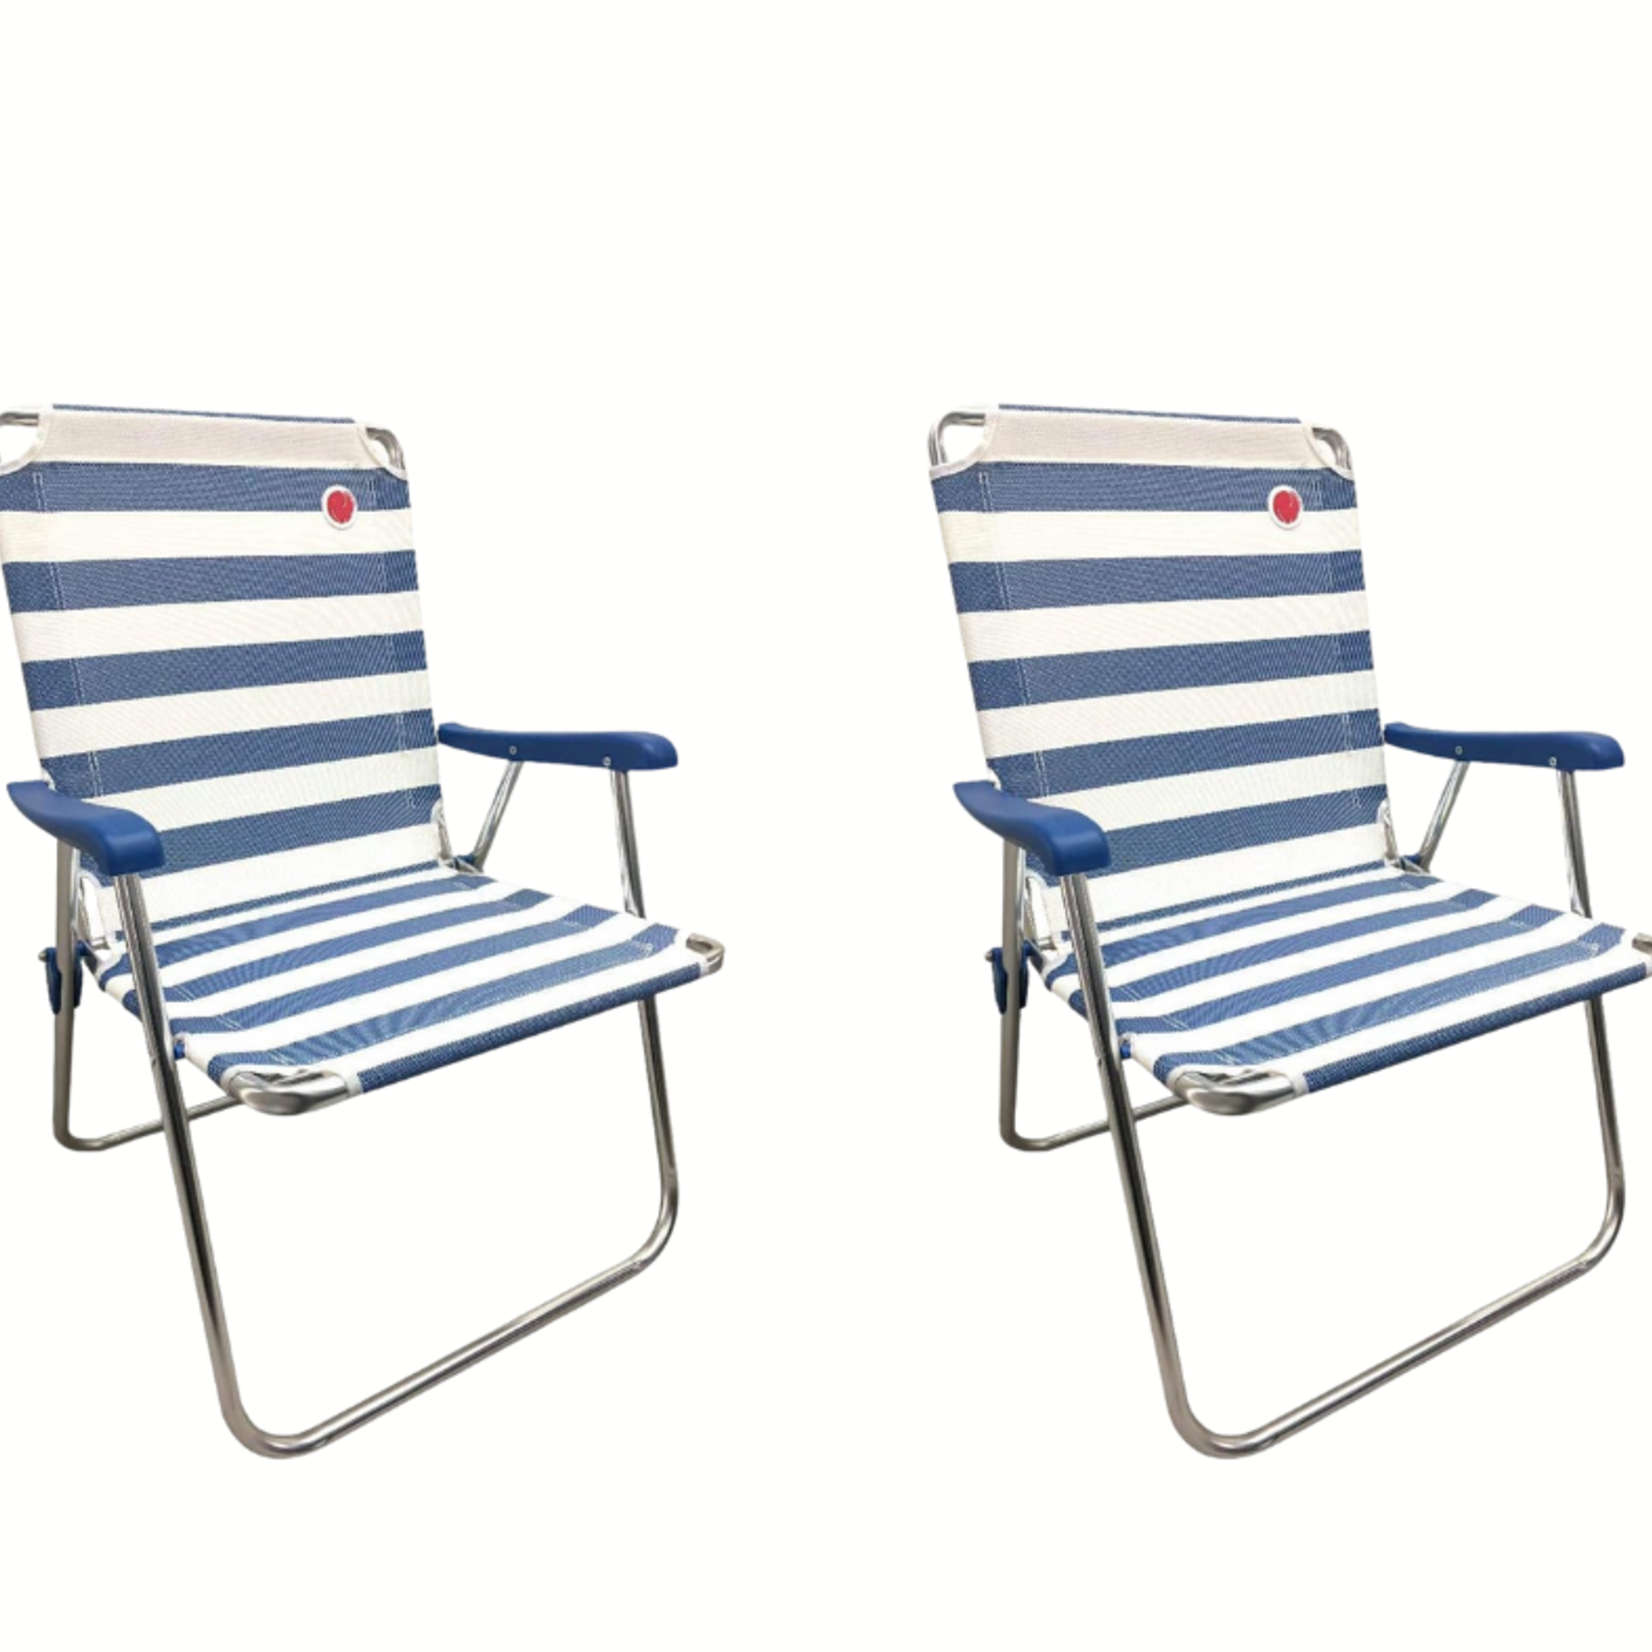 Omni Core Designs Folding Lawn Chair Set- Blue Stripe